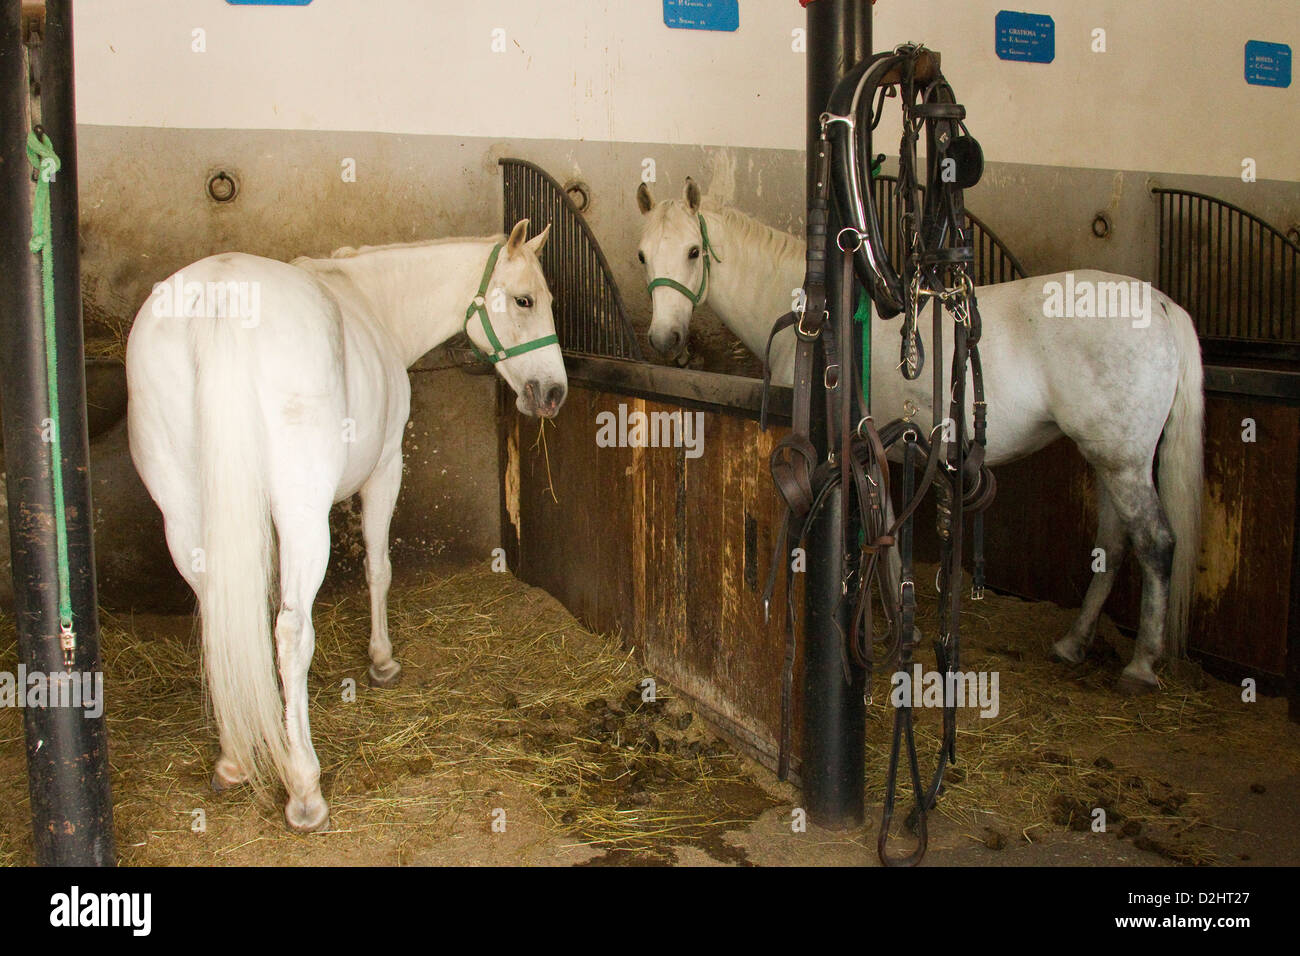 Cheval lipizzan. Deux chevaux debout dans leurs stalles Banque D'Images